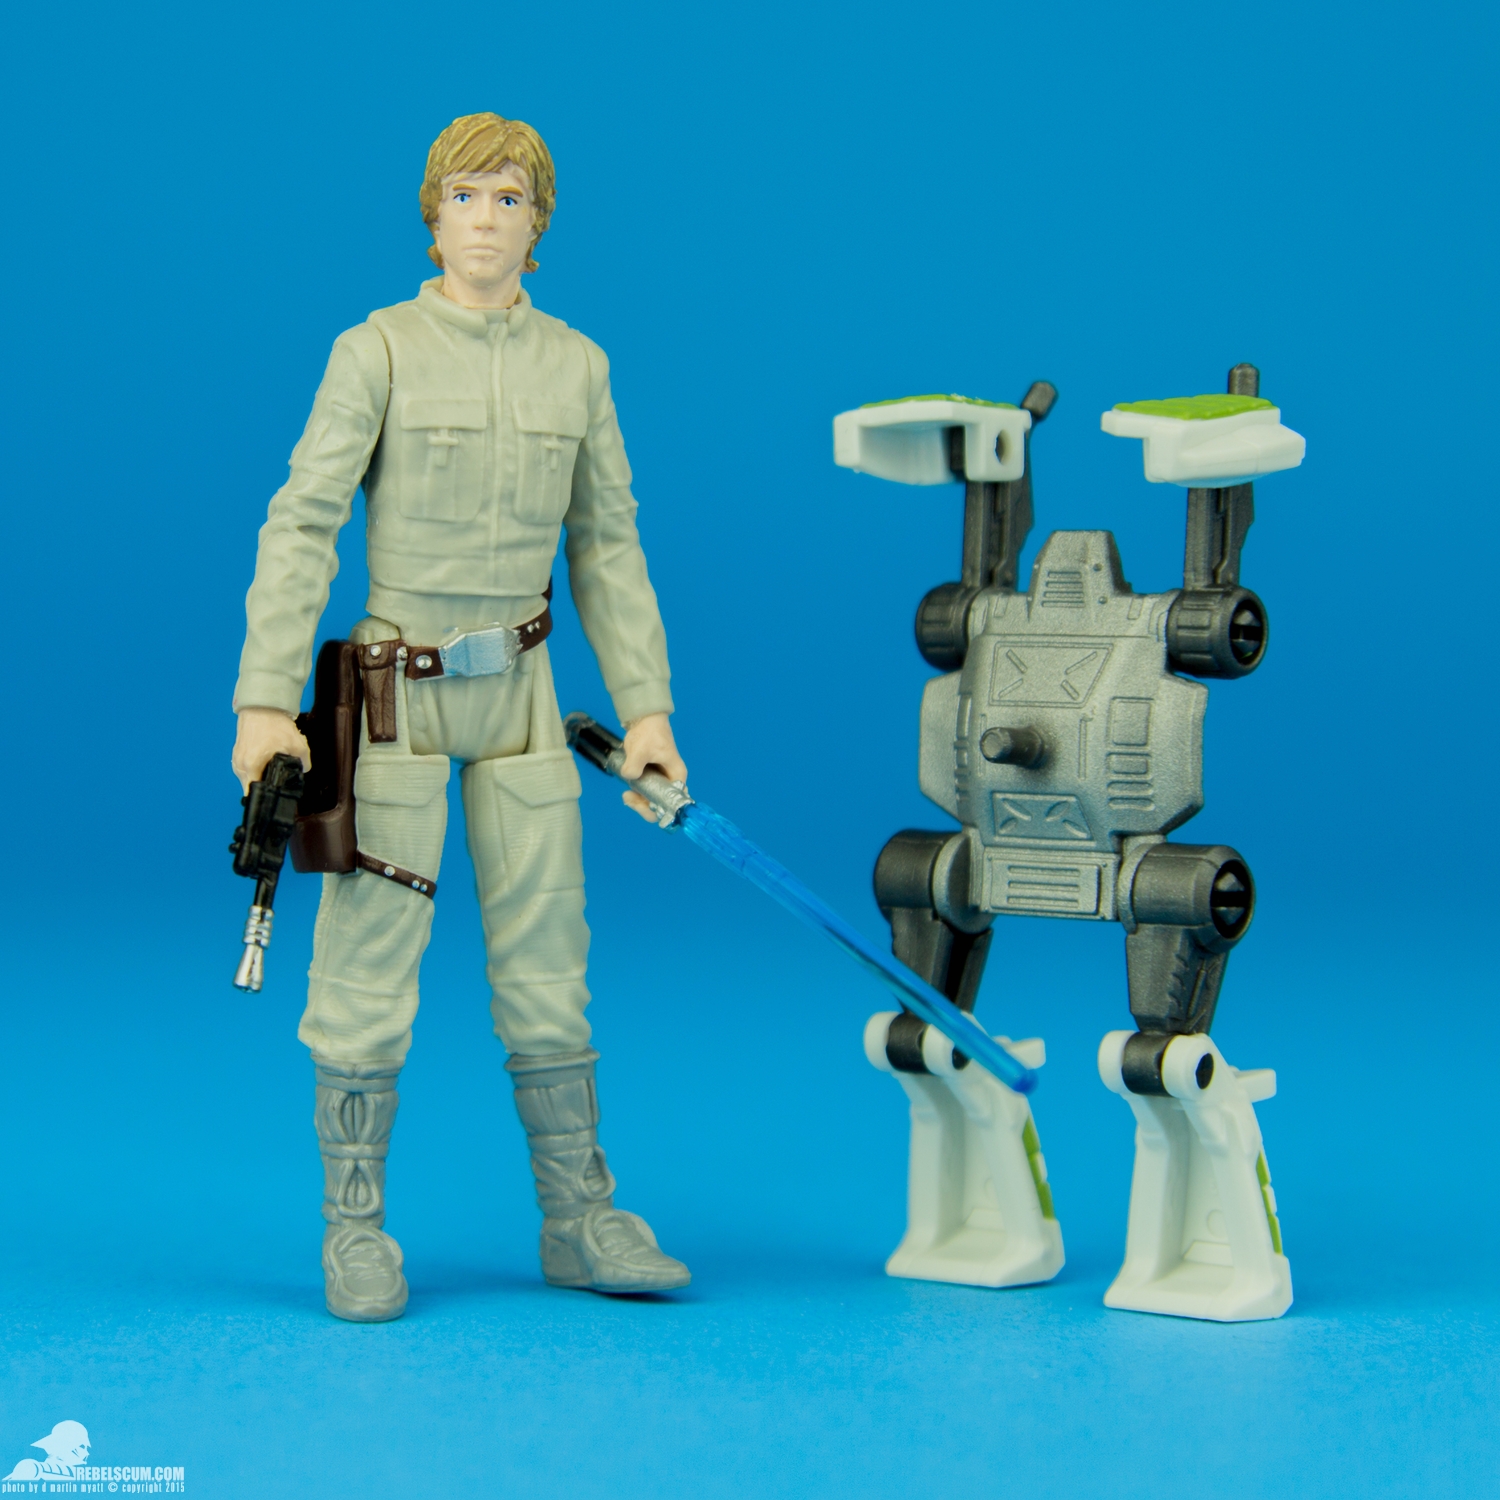 Luke-Skywalker-Star-Wars-The-Force-Awakens-Hasbro-007.jpg